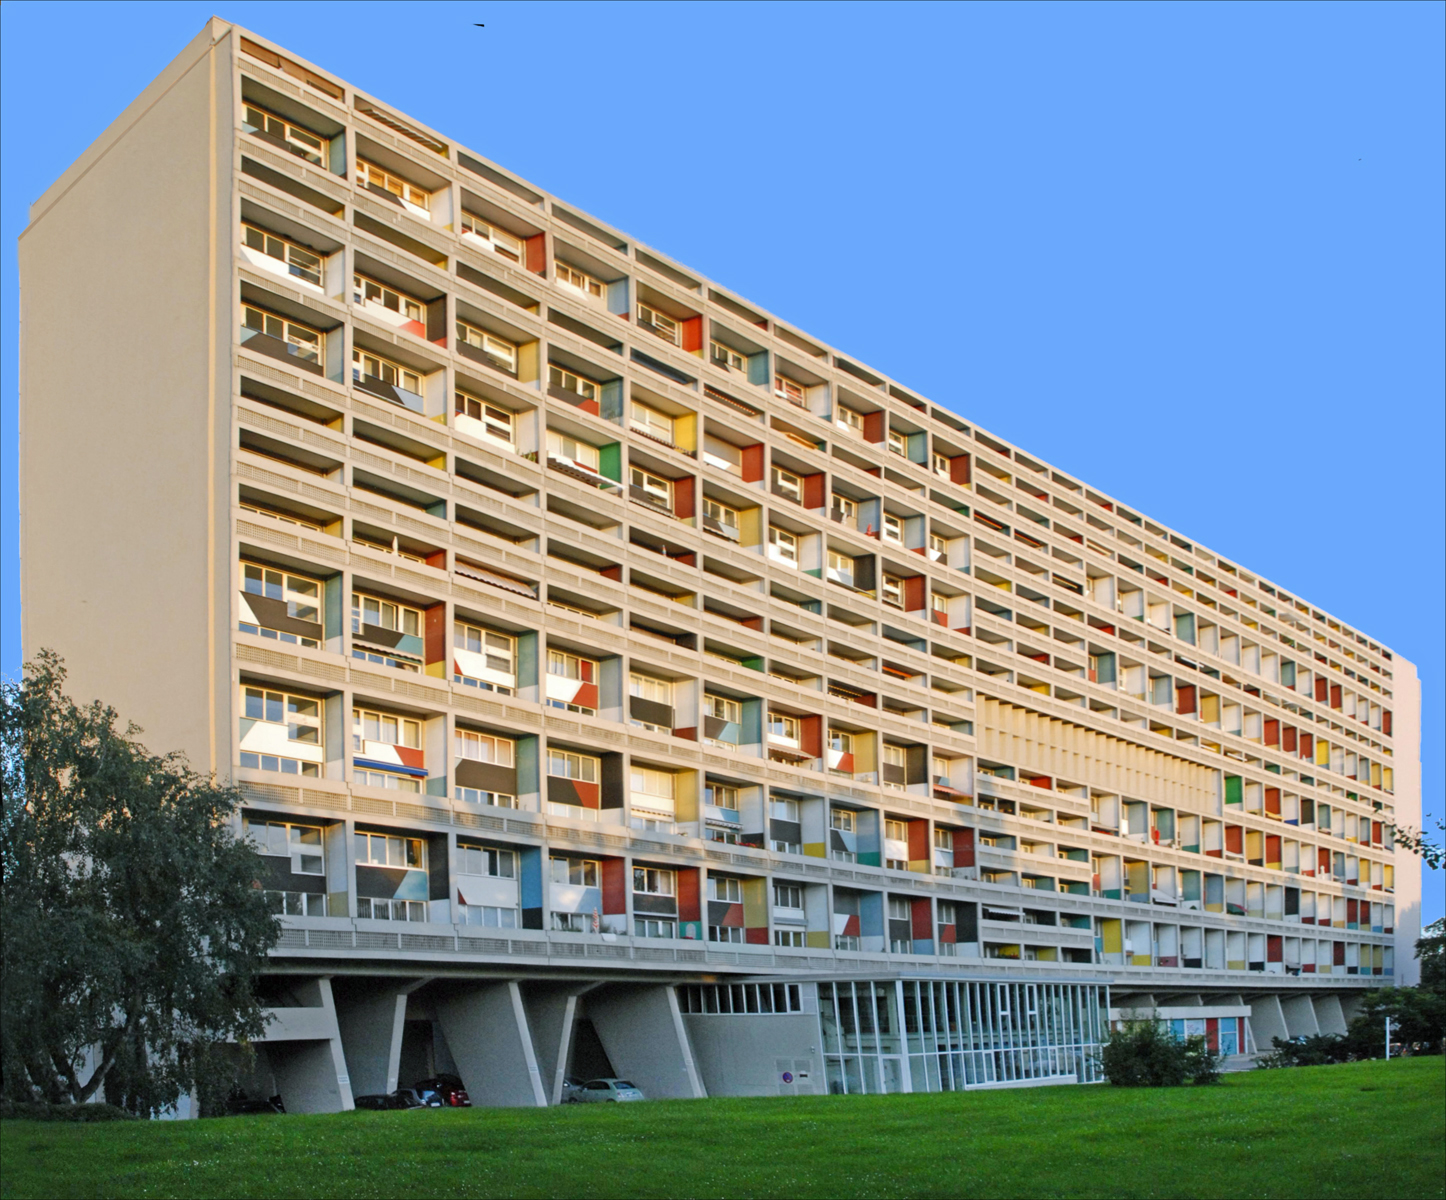 Arquitetura futurista, Corbusierhaus, Berlim, Alemanha